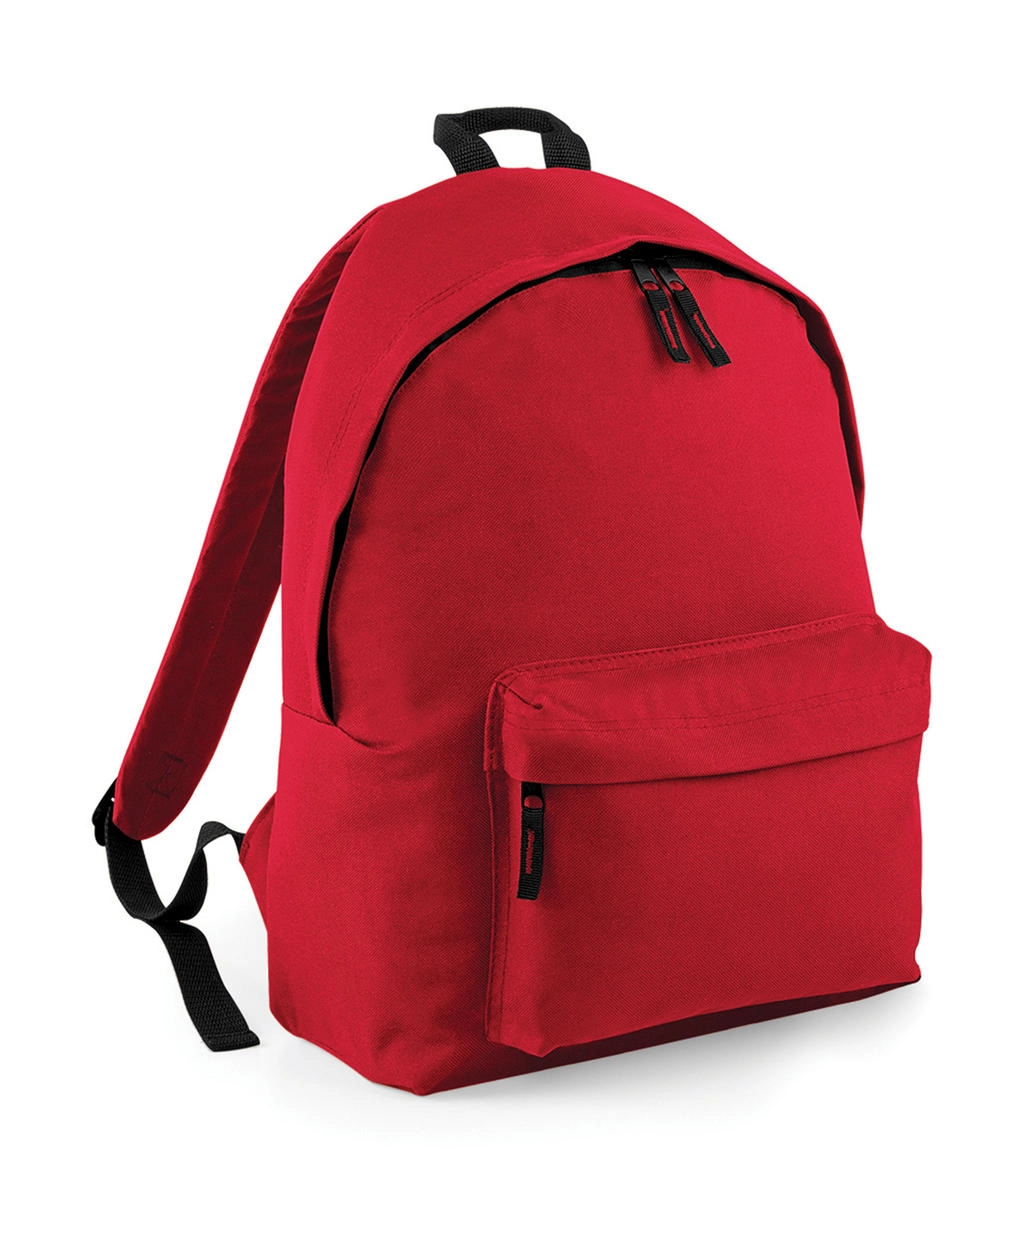 Original Fashion Backpack zum Besticken und Bedrucken in der Farbe Classic Red mit Ihren Logo, Schriftzug oder Motiv.